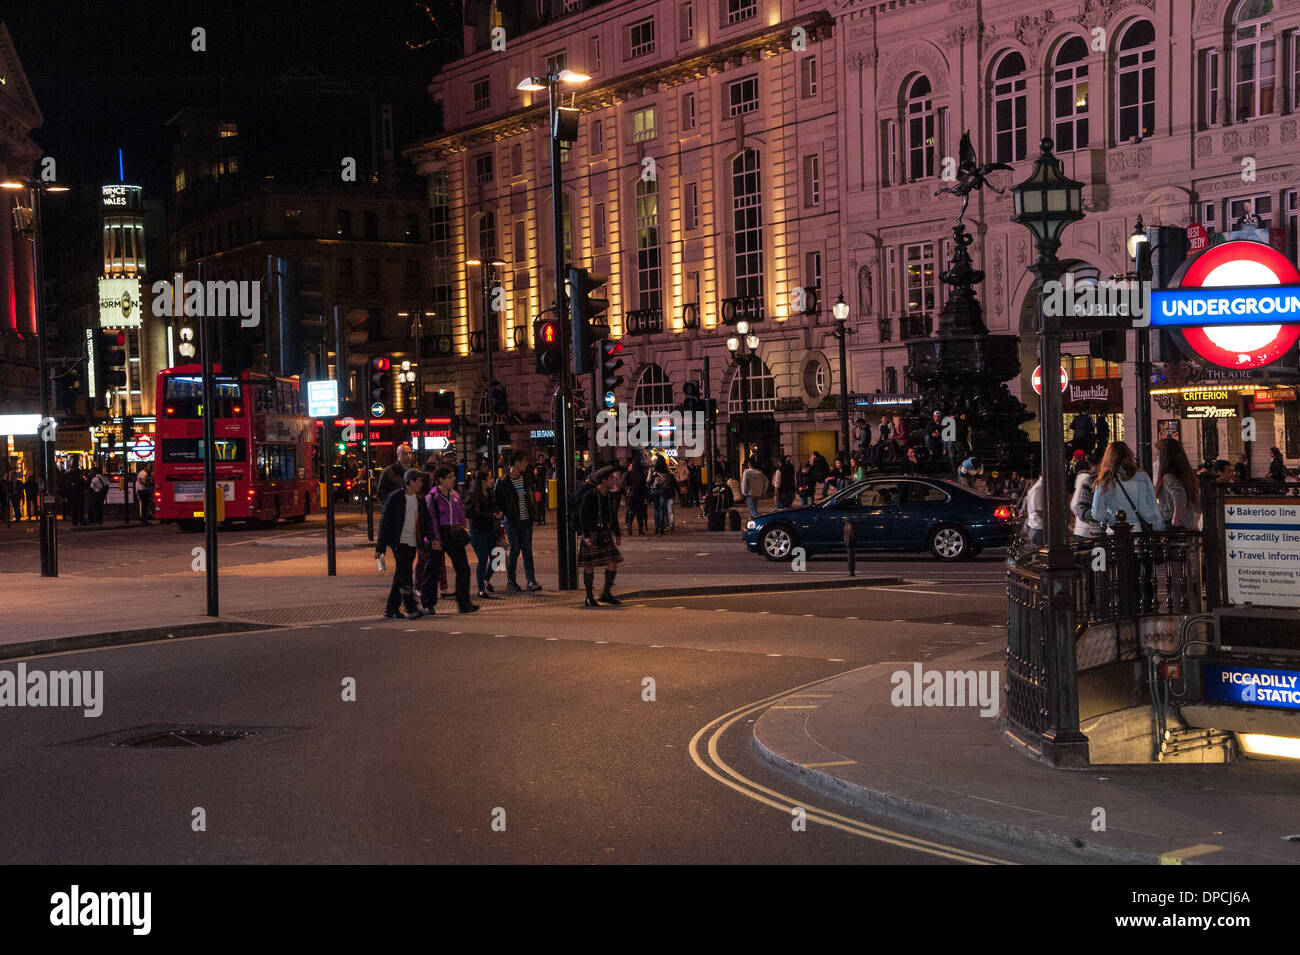 Londra Piccadilly circus di notte con autobus rossi e cabine di Londra Foto Stock